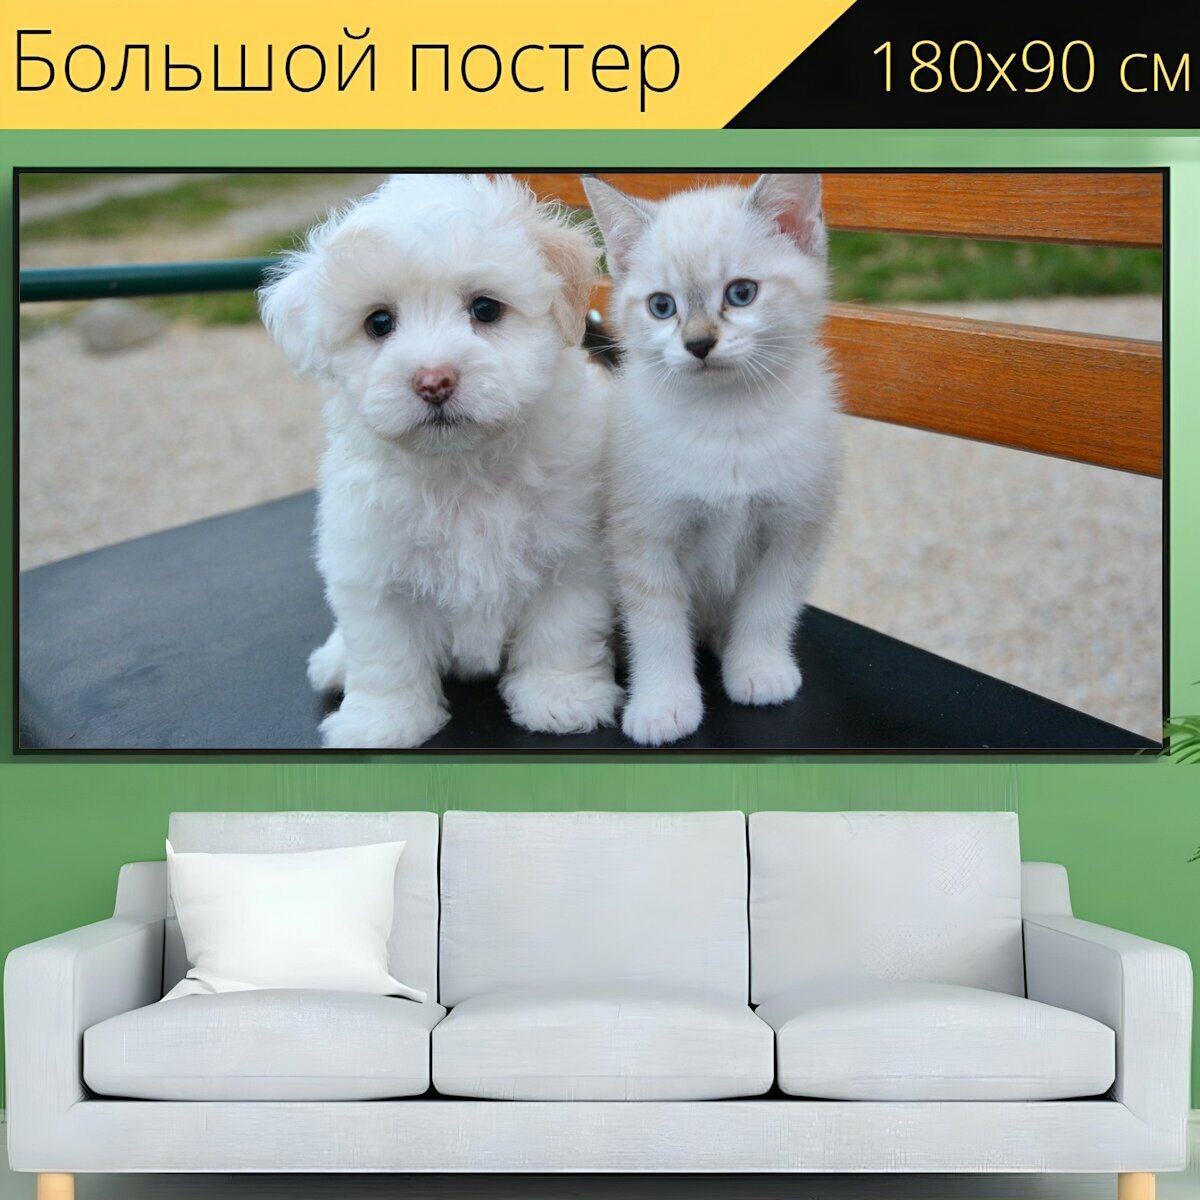 Большой постер "Собака кошка, щенок, котенок" 180 x 90 см. для интерьера